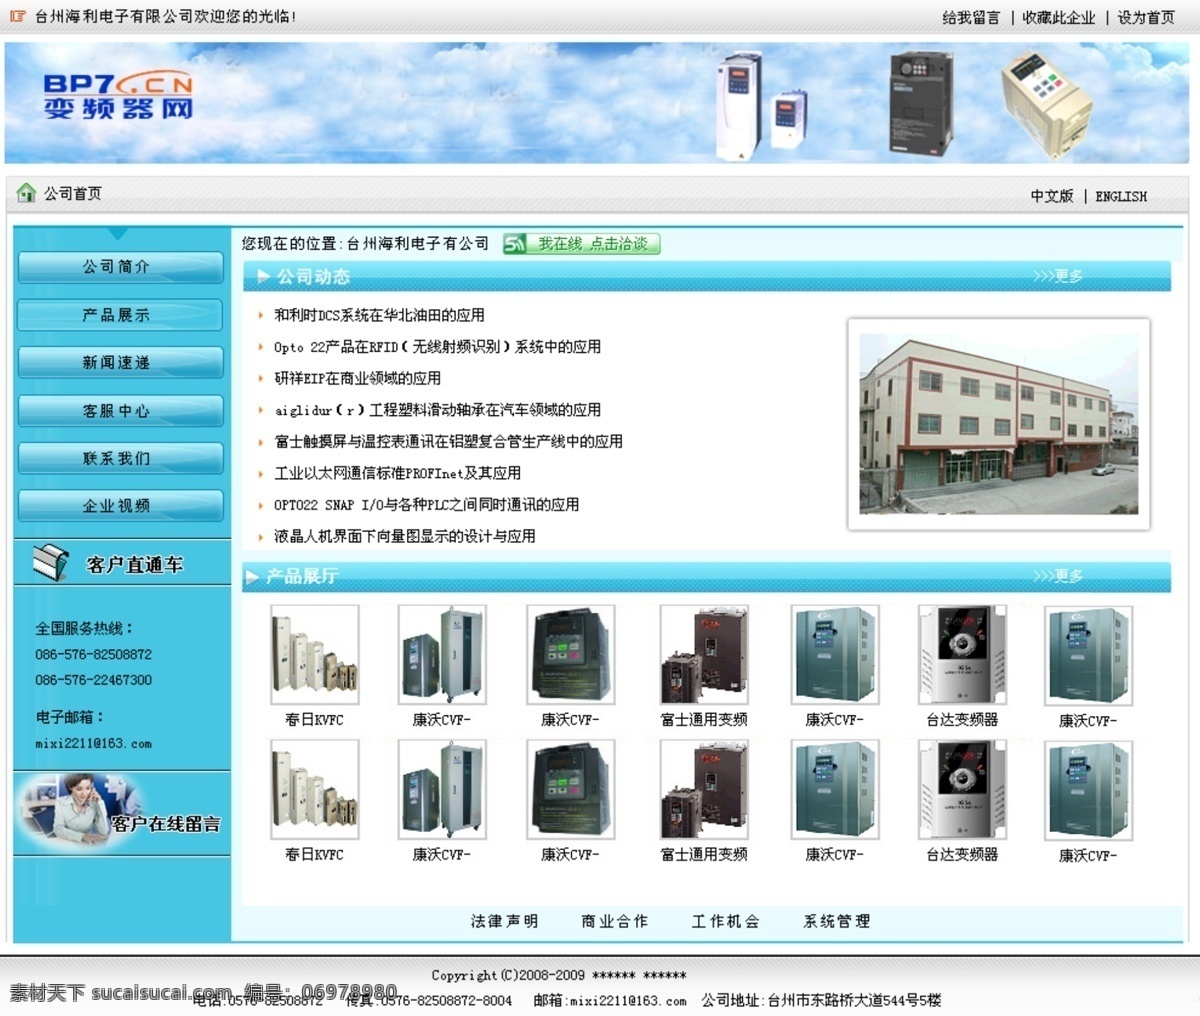 绿色网页模板 企业 企业模板 企业网站 网页模板 网站 源文件 变频器 二级域名模板 网页分层素材 中文模版 网页素材